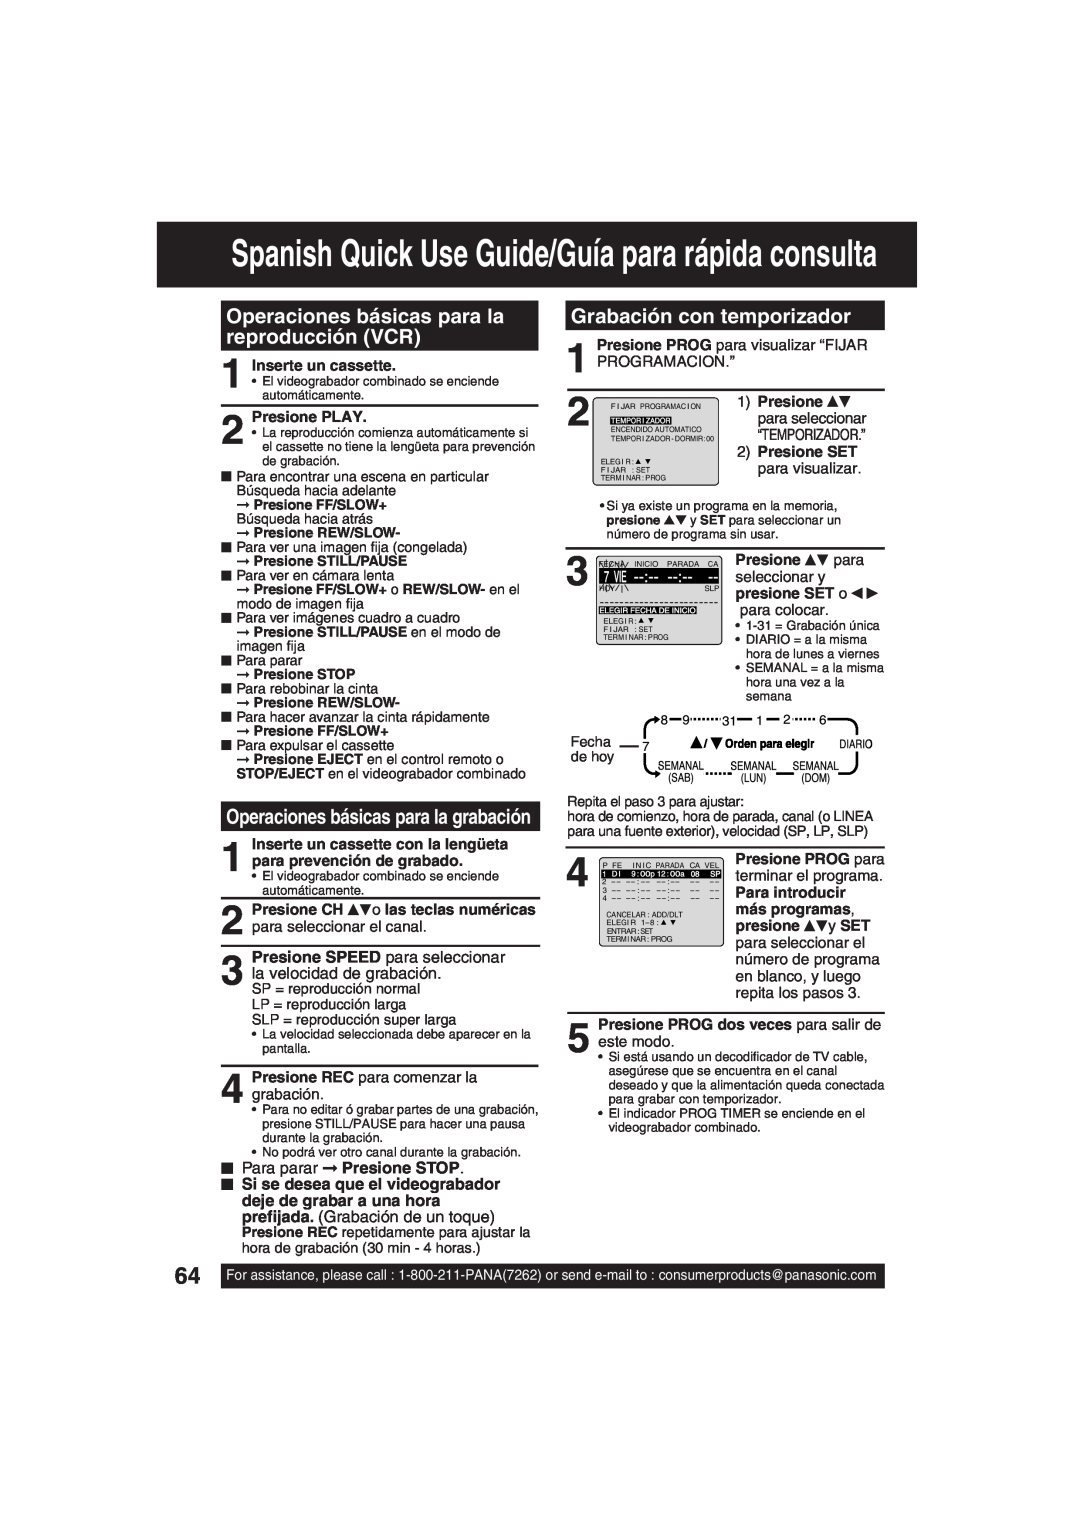 Panasonic PV-DF203 manual Spanish Quick Use Guide/Guía para rápida consulta, Operaciones básicas para la reproducción VCR 